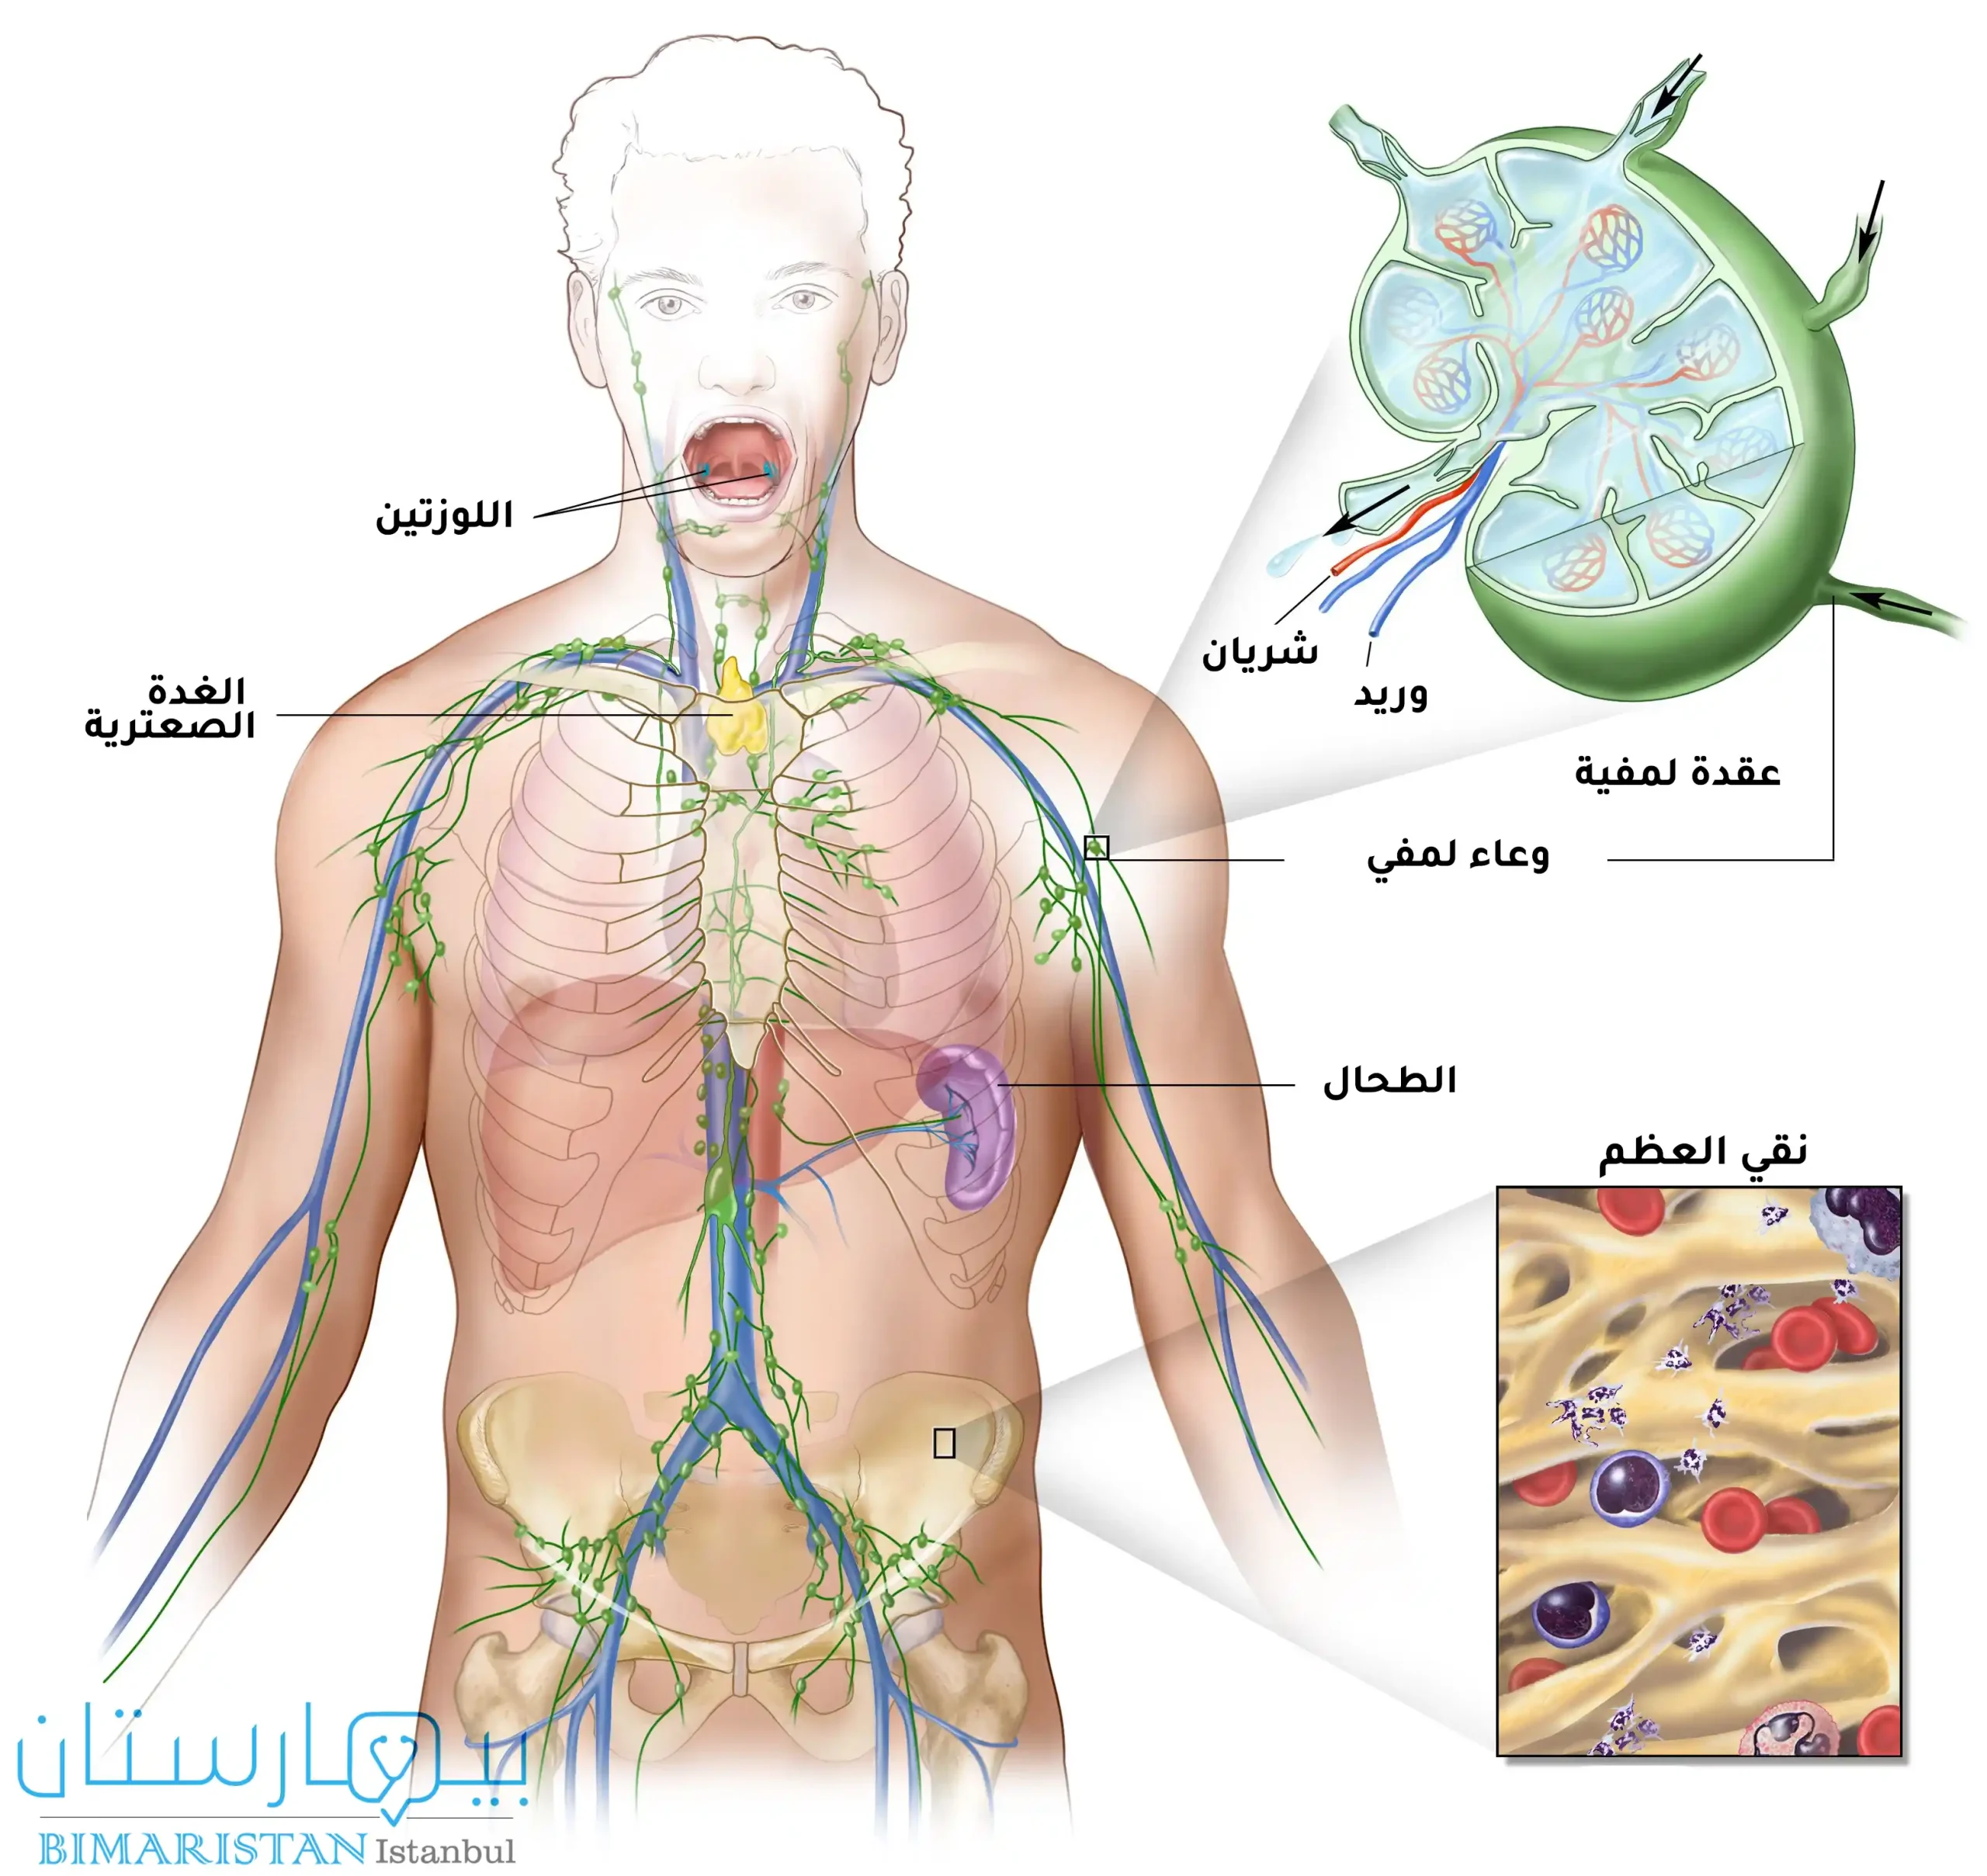 Lenfatik sistemi, lenf düğümünü ve kemik iliğini gösteren resim